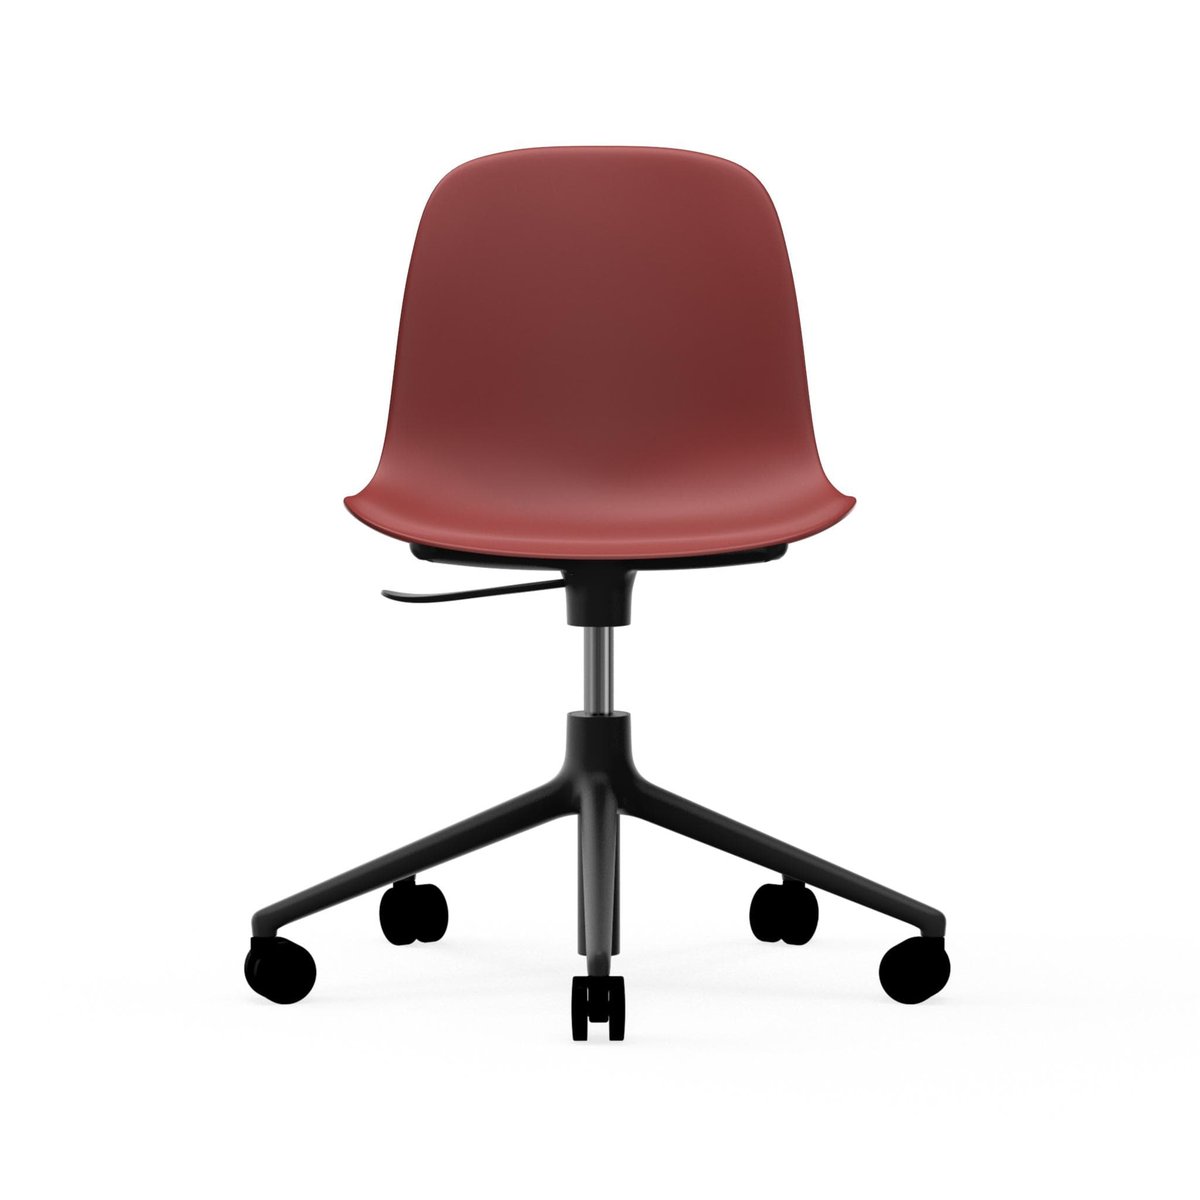 Normann Copenhagen Form chair drejestol 5W kontorstol rød sort aluminium hjul